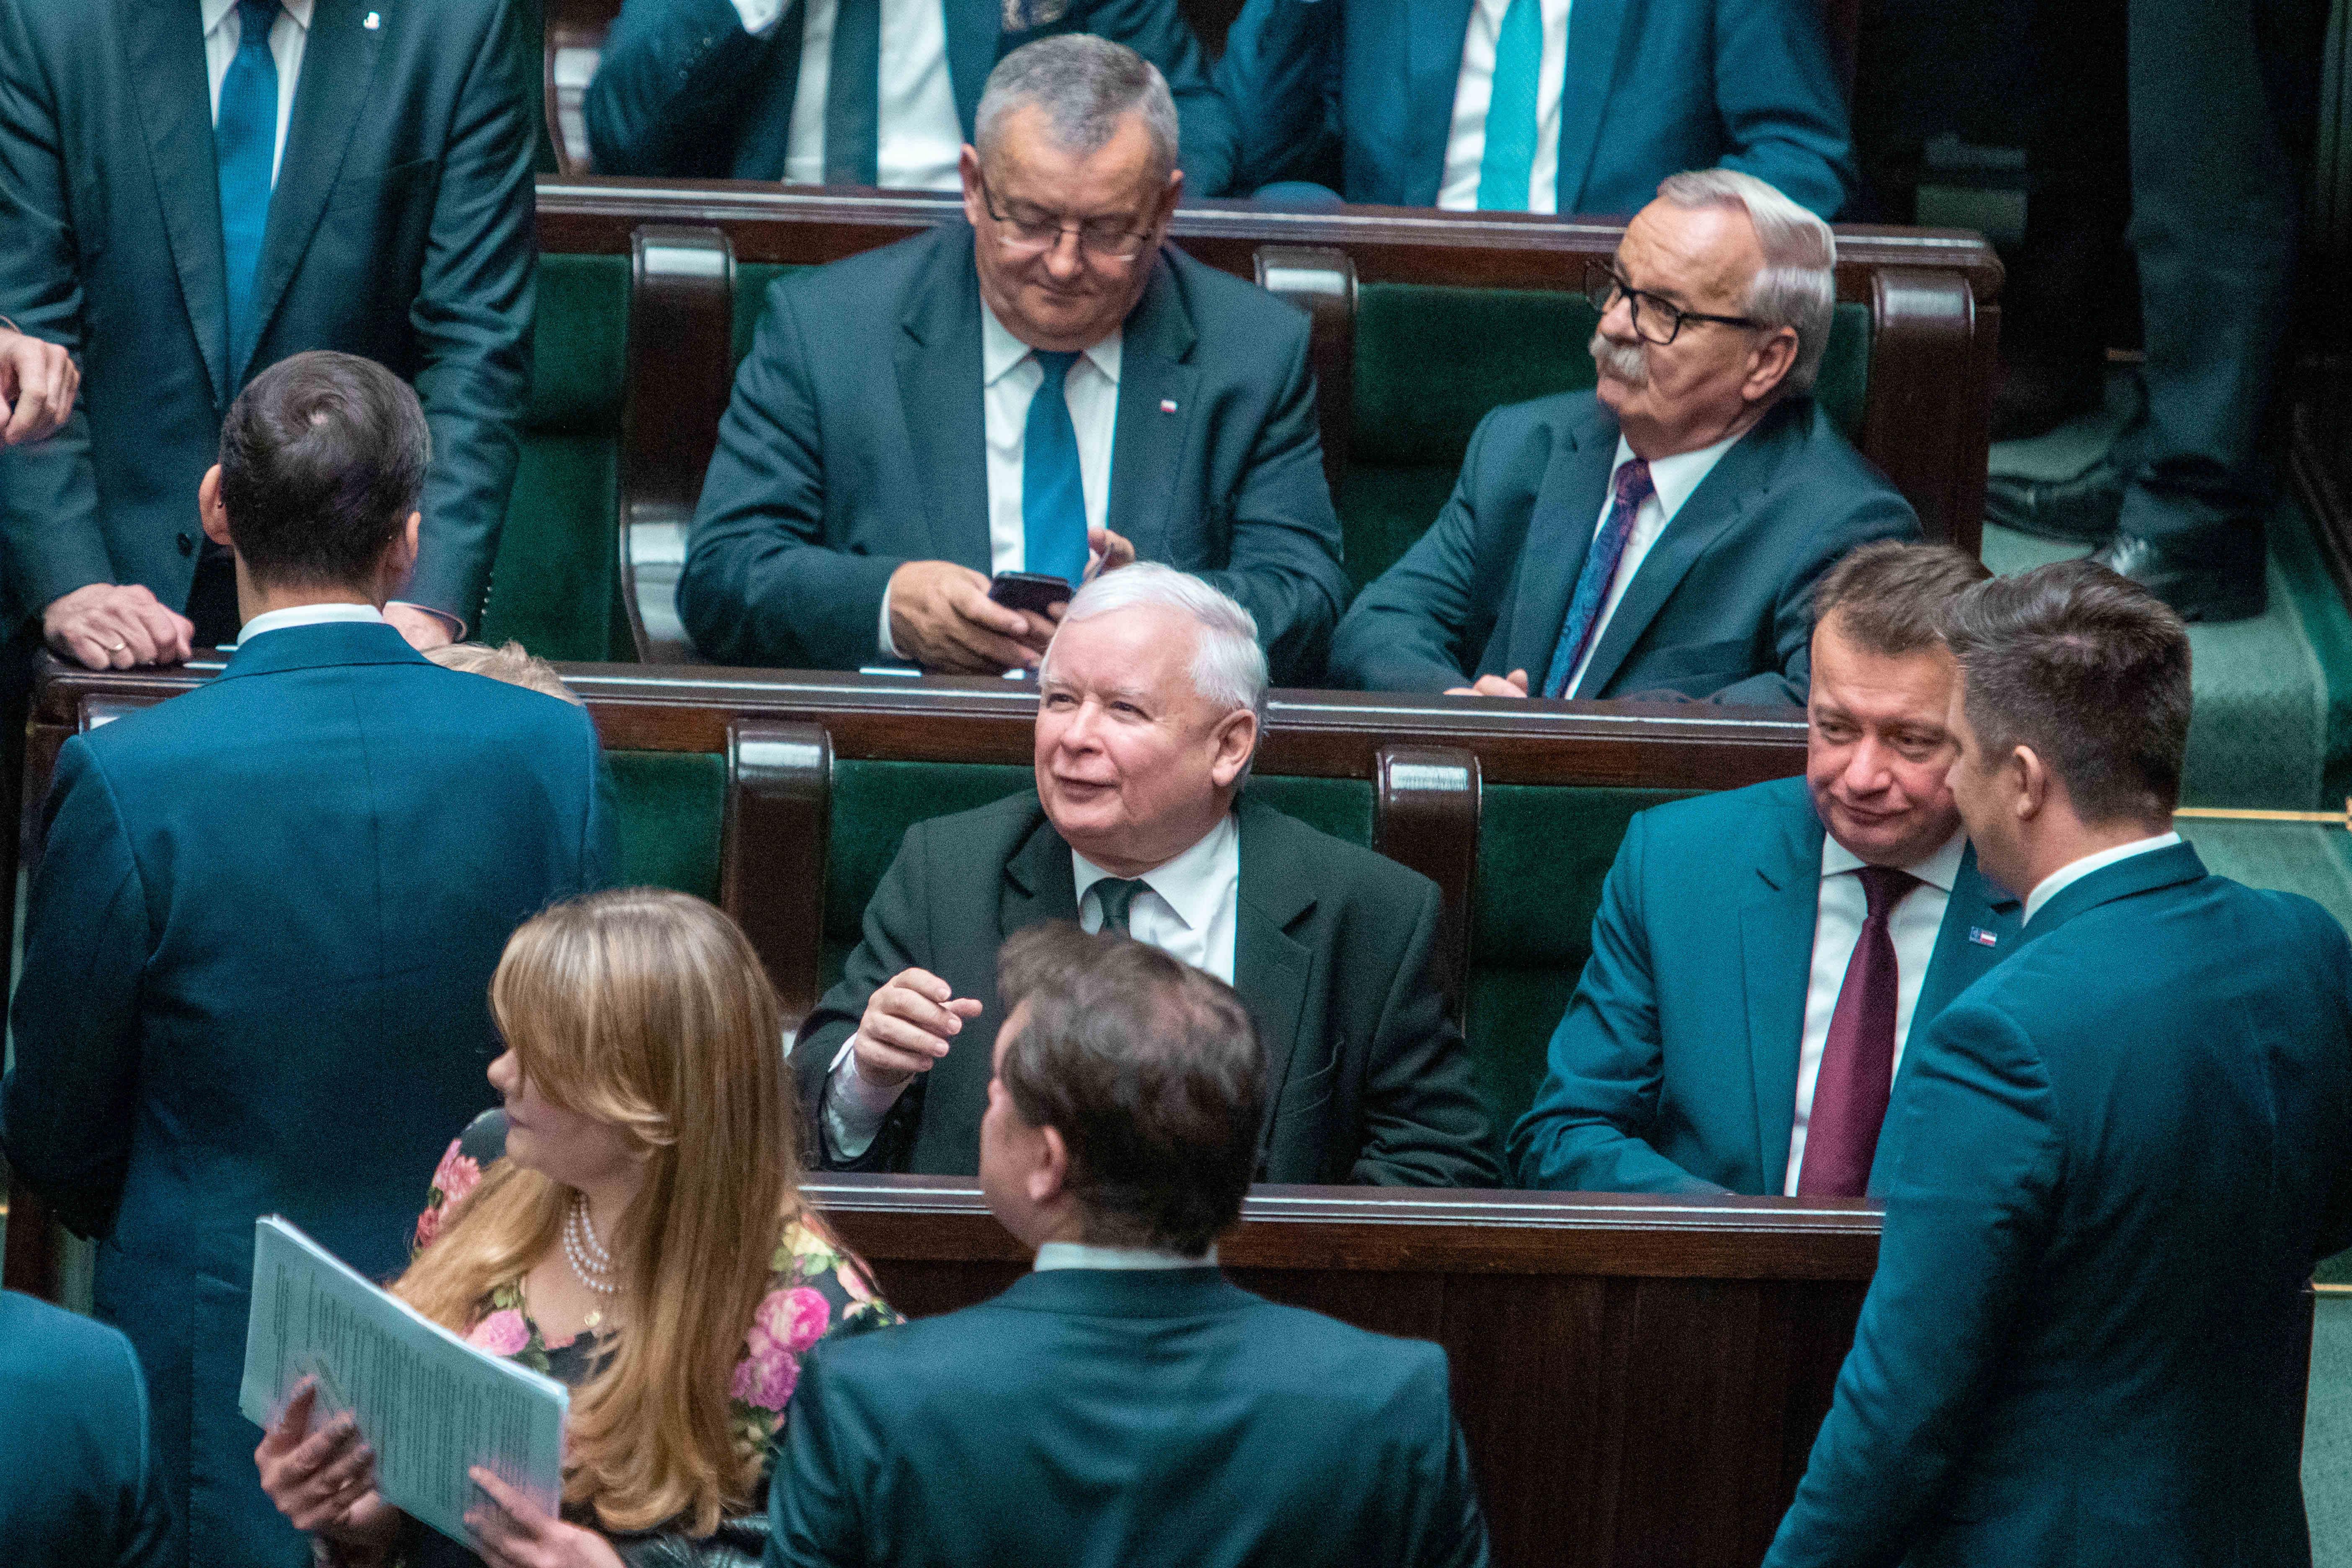 12/11/2019 El viceprimer ministro de Polonia, Jaroslaw Kaczynski.. El viceprimer ministro de Polonia, Jaroslaw Kaczynski, ha logrado superar la moción de censura presentada contra él en el Parlamento por el partido liberal Plataforma Cívica (KO, por sus siglas en polaco), después de un encendido debate en el que oposición y oficialismo se han dedicado ataques de todo tipo. POLITICA EUROPA POLONIA INTERNACIONAL GRZEGORZ BANASZAK / ZUMA PRESS / CONTACTOPHOTO 